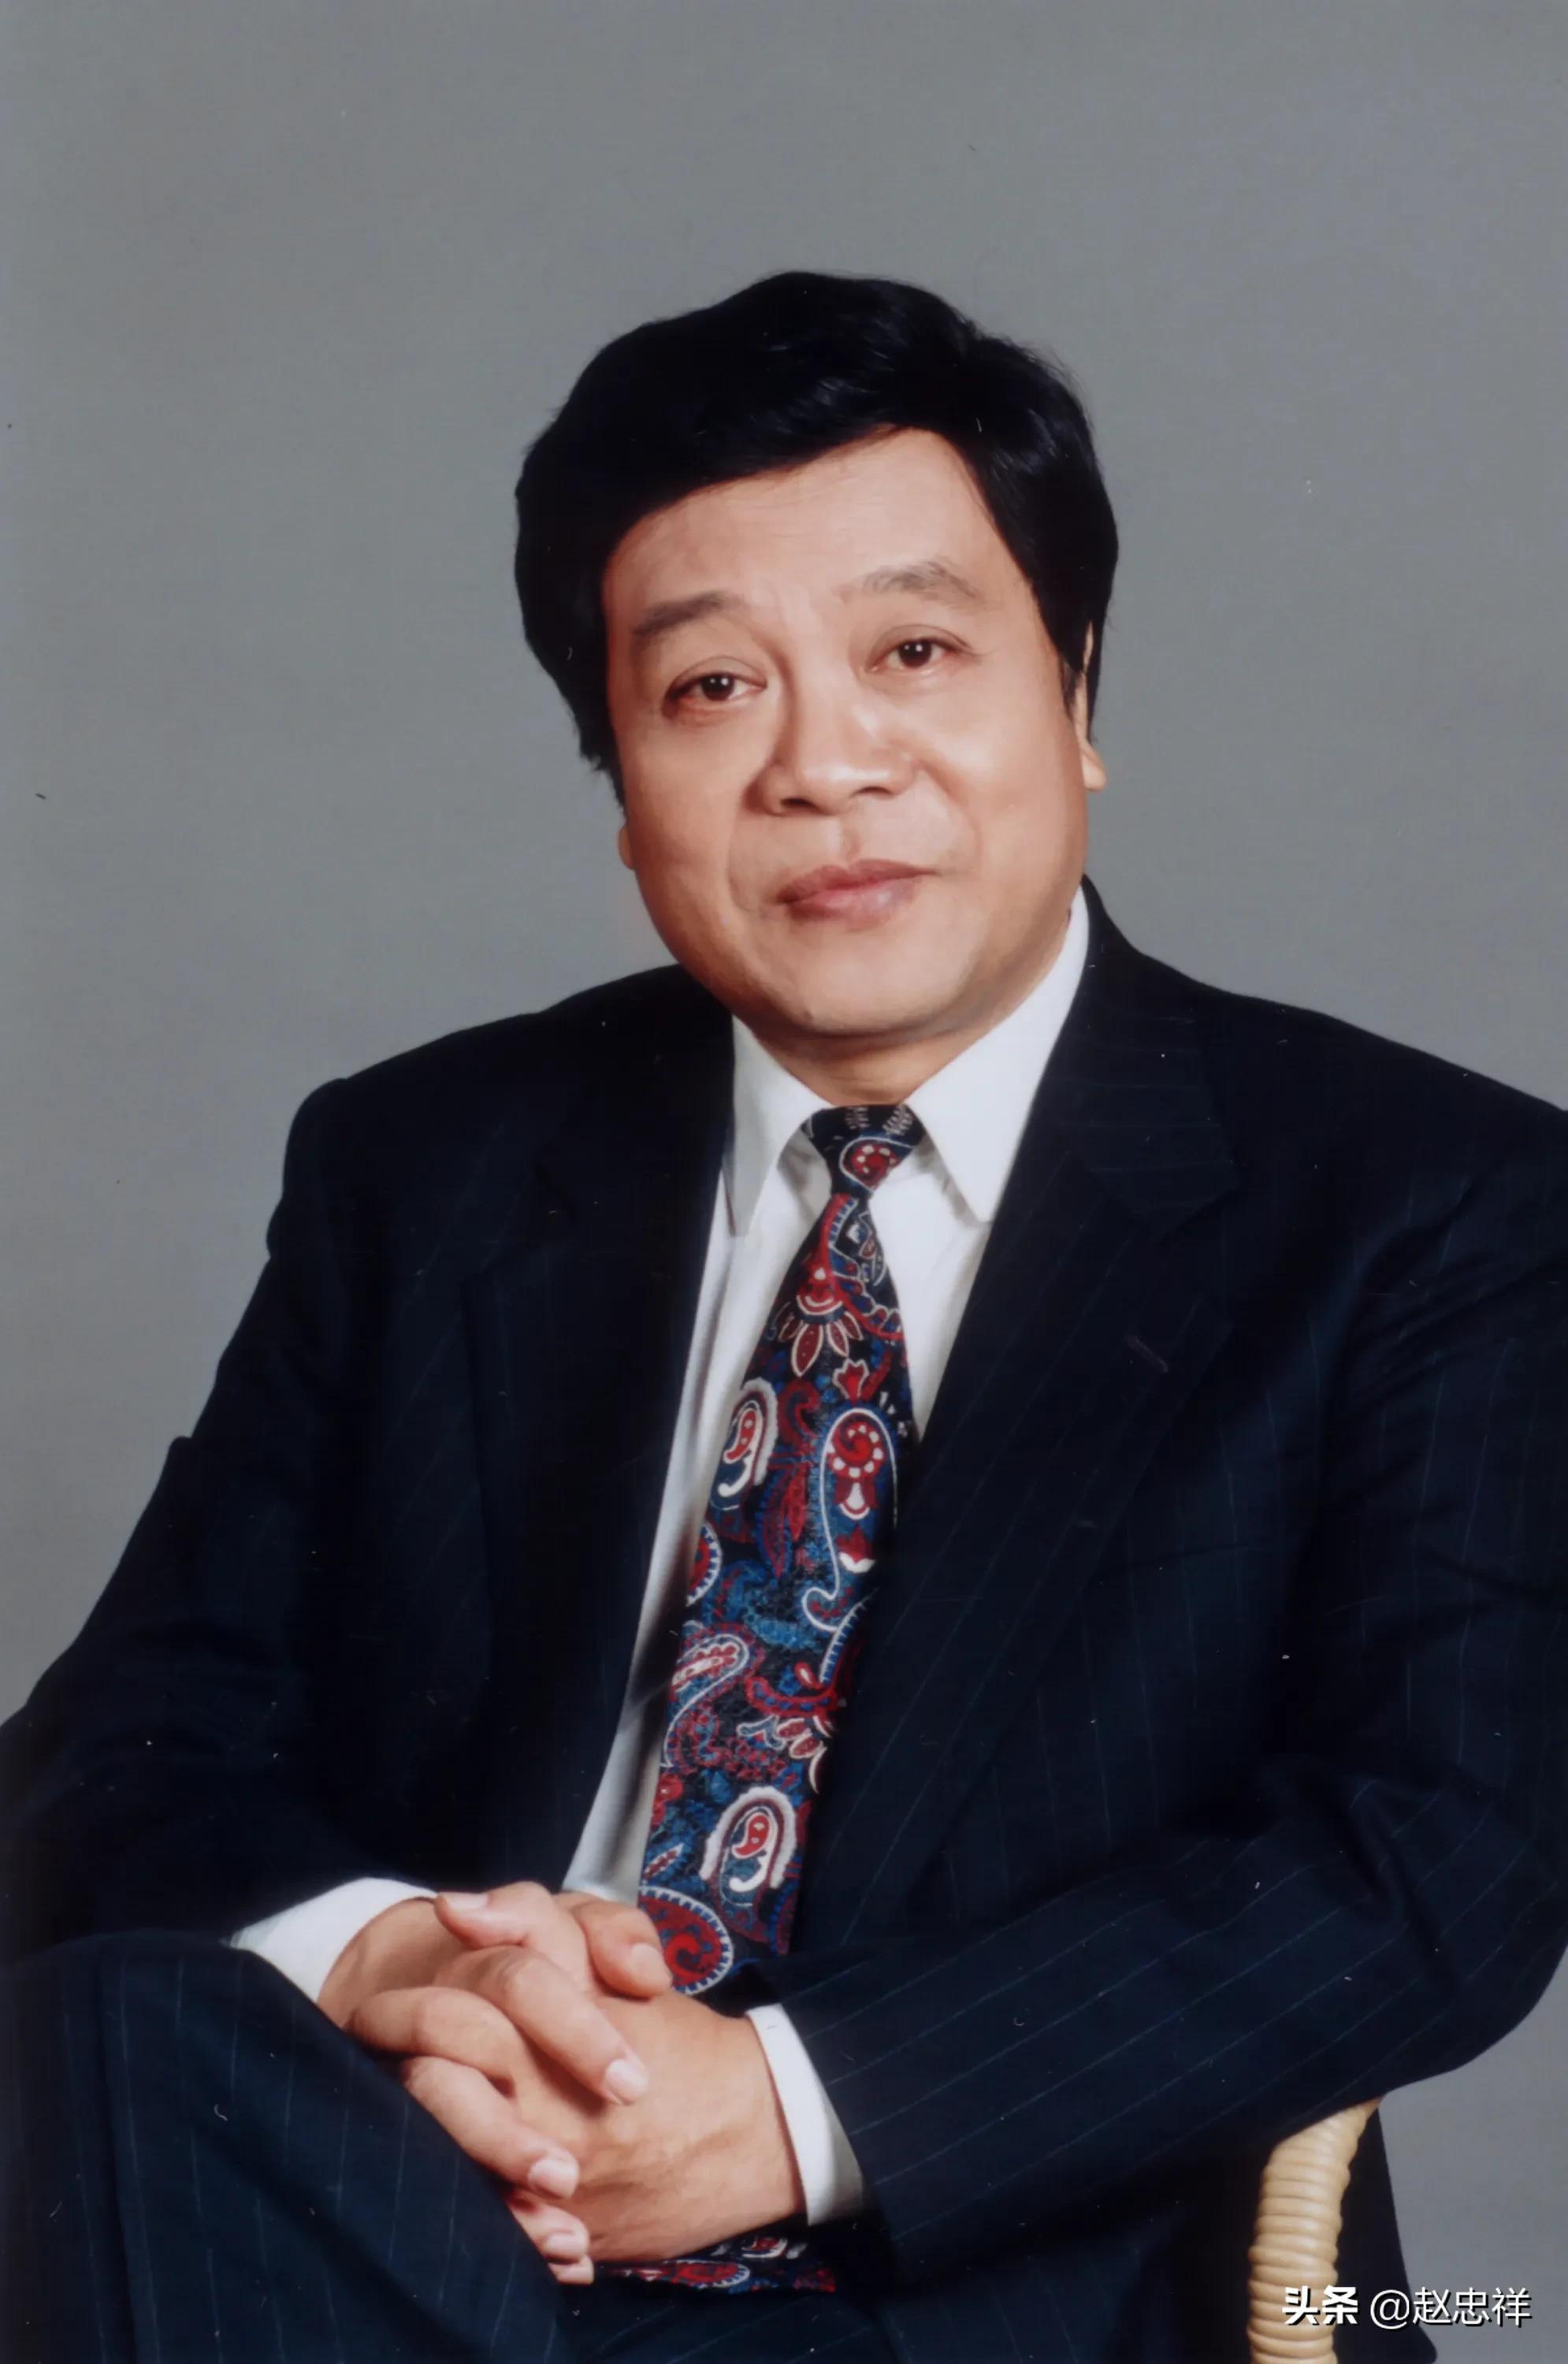 赵忠祥于2020年1月16日7:30因病在京去世，享年78岁